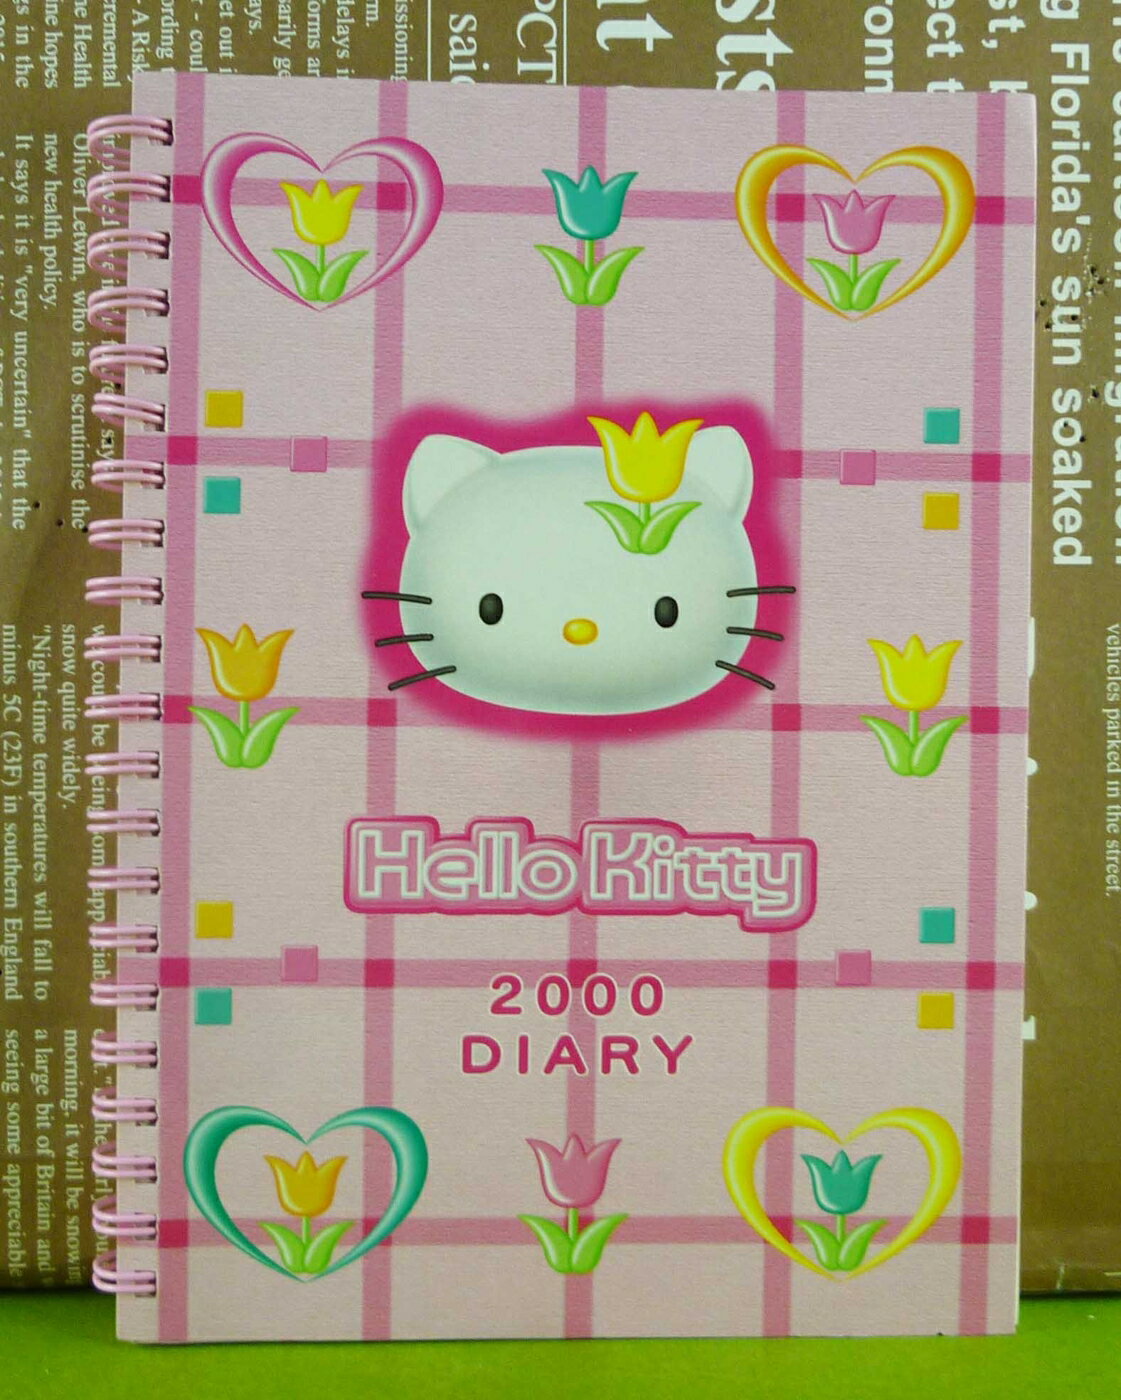 【震撼精品百貨】Hello Kitty 凱蒂貓 工作日誌-家計簿 粉金香【共1款】 震撼日式精品百貨